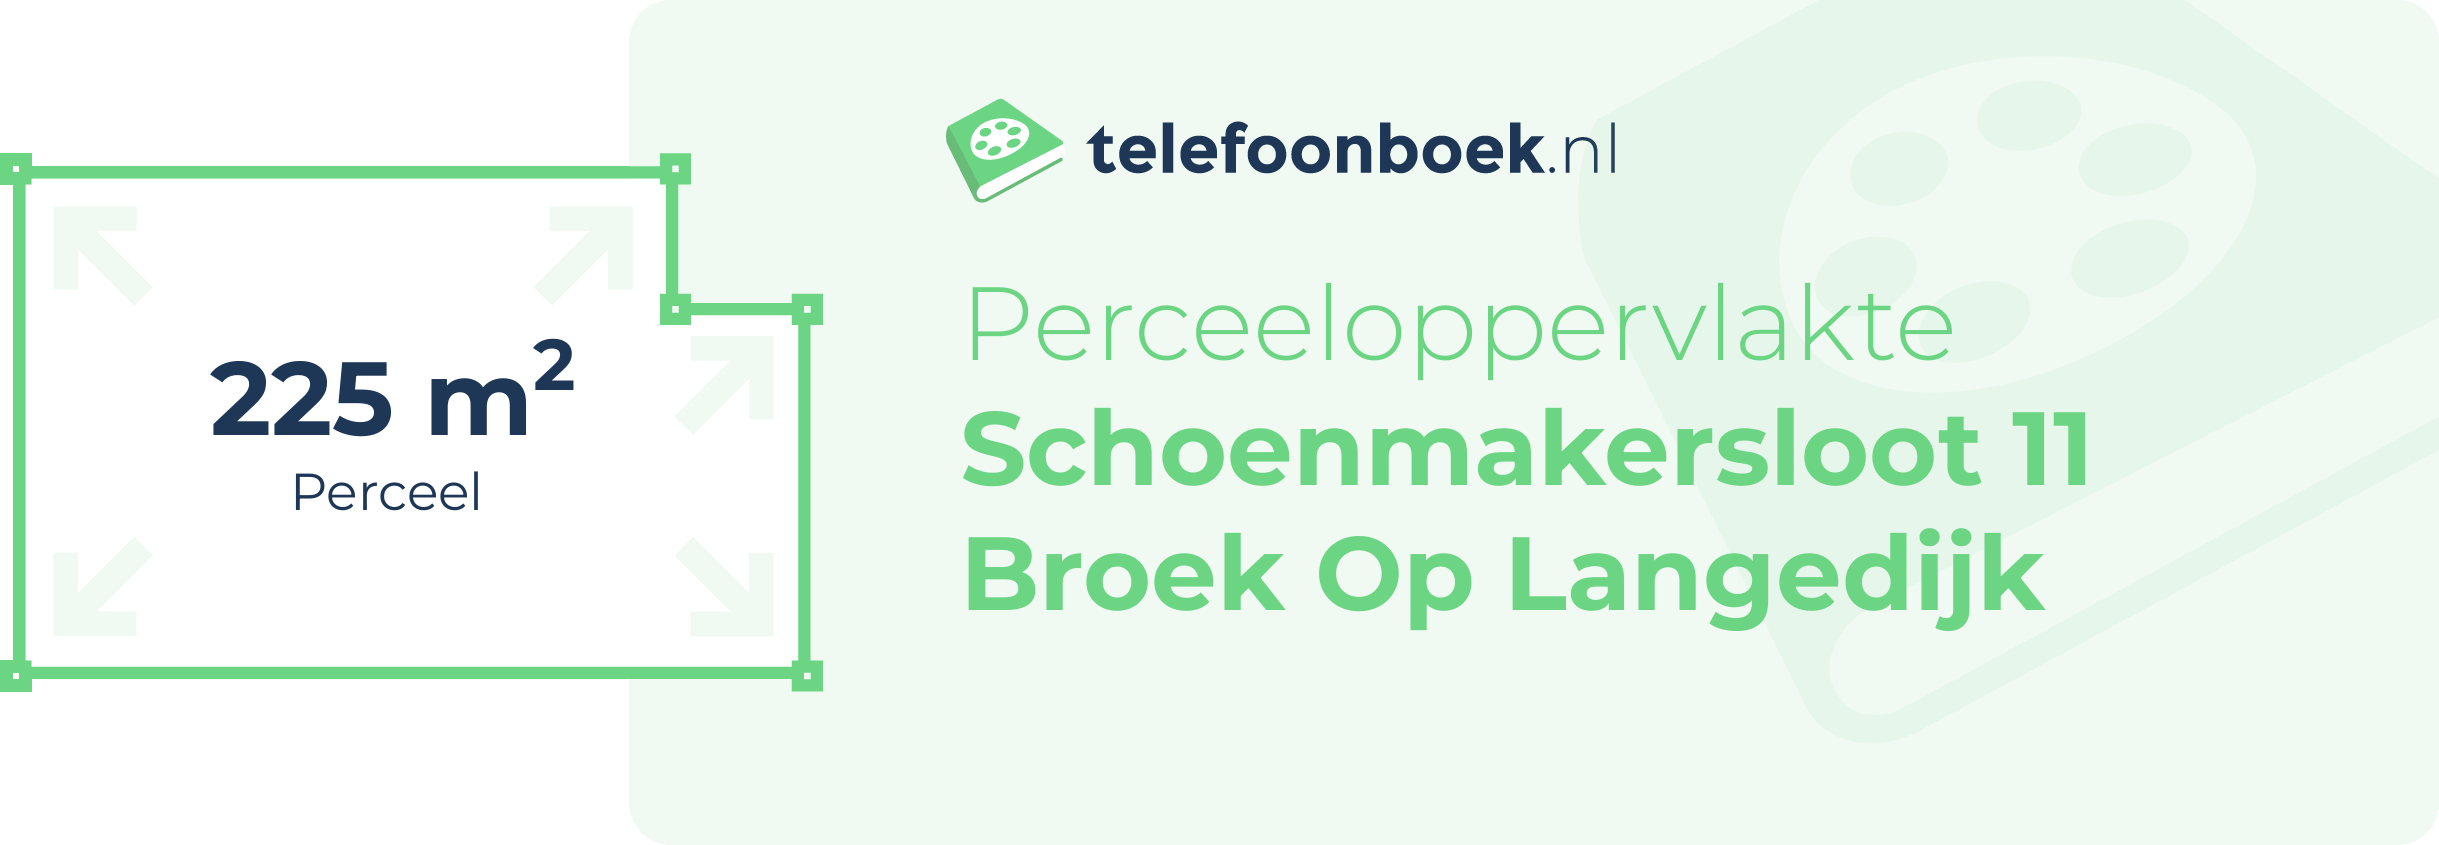 Perceeloppervlakte Schoenmakersloot 11 Broek Op Langedijk